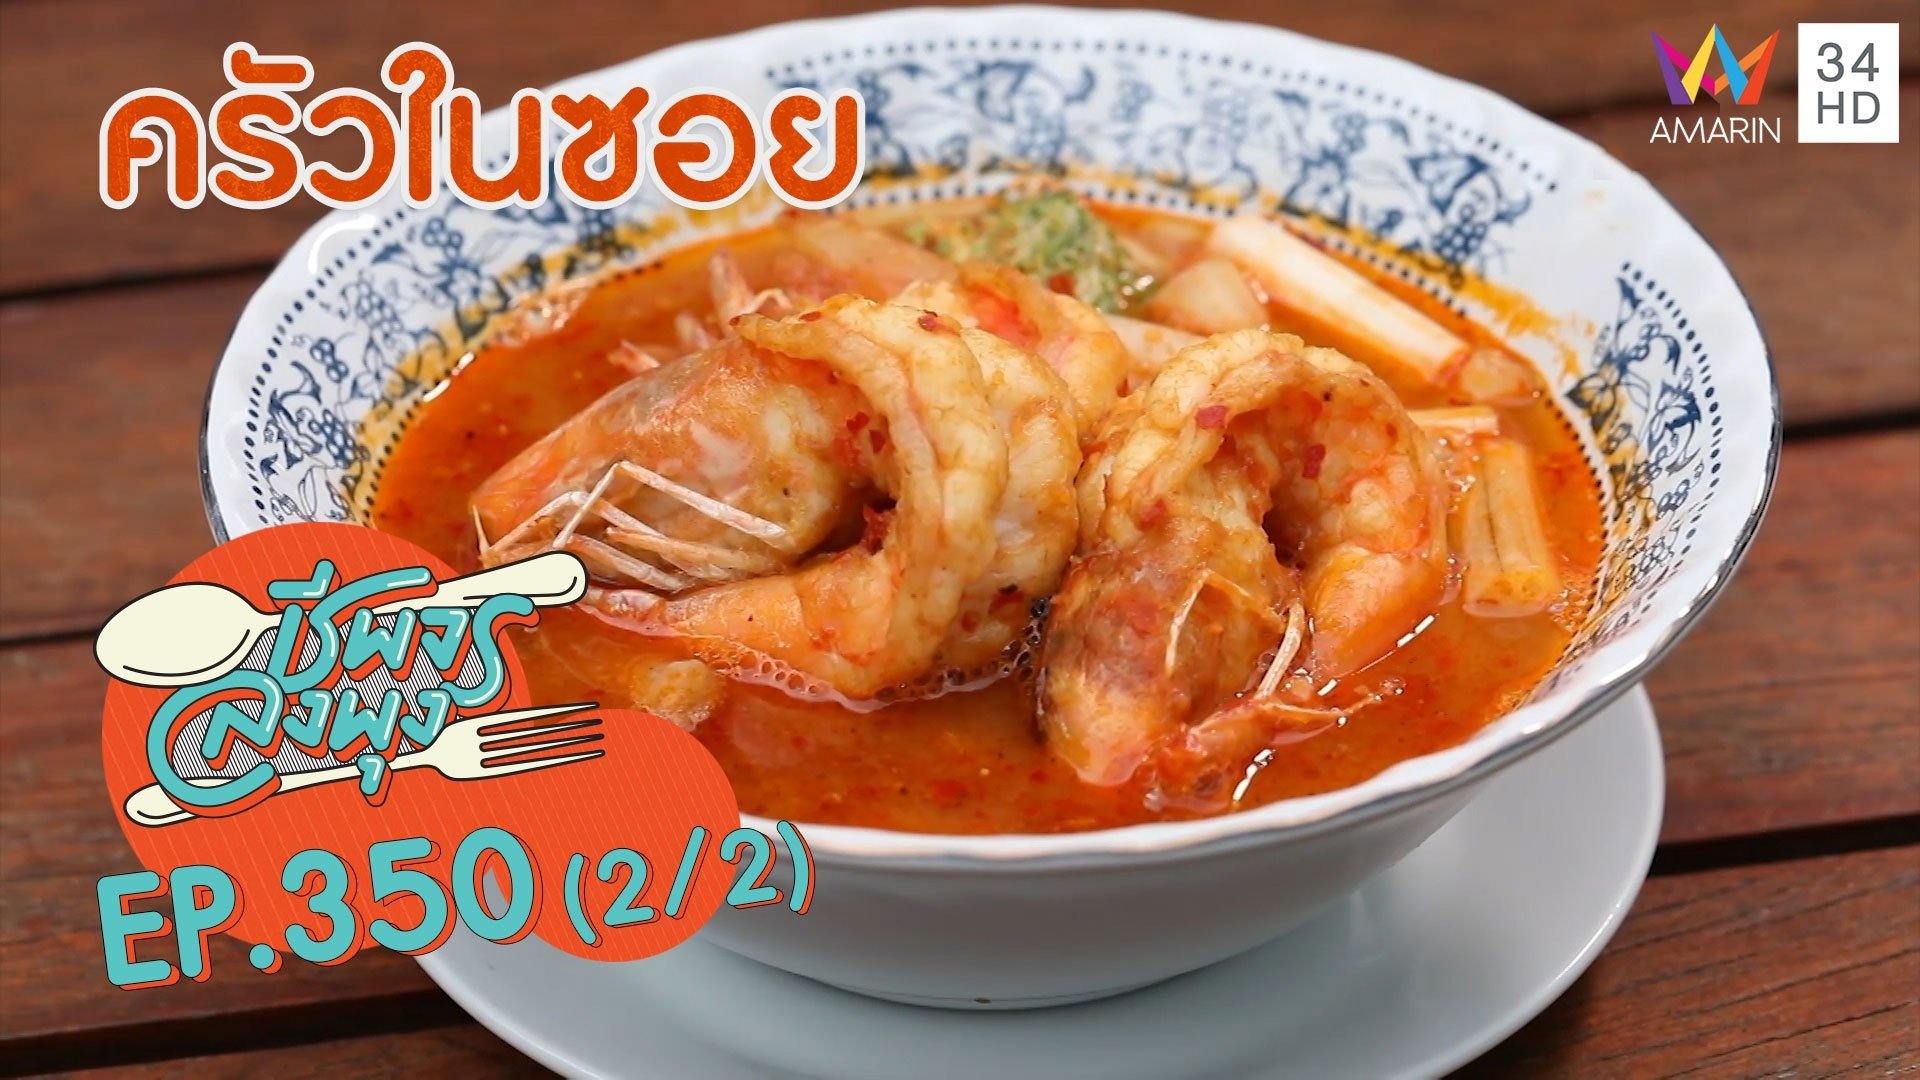 อาหารไทยอร่อยเด็ดโดนใจ กินแล้วต้องมาซ้ำ @ ร้านครัวในซอย | ชีพจรลงพุง | 12 ธ.ค. 64 (2/2) | AMARIN TVHD34